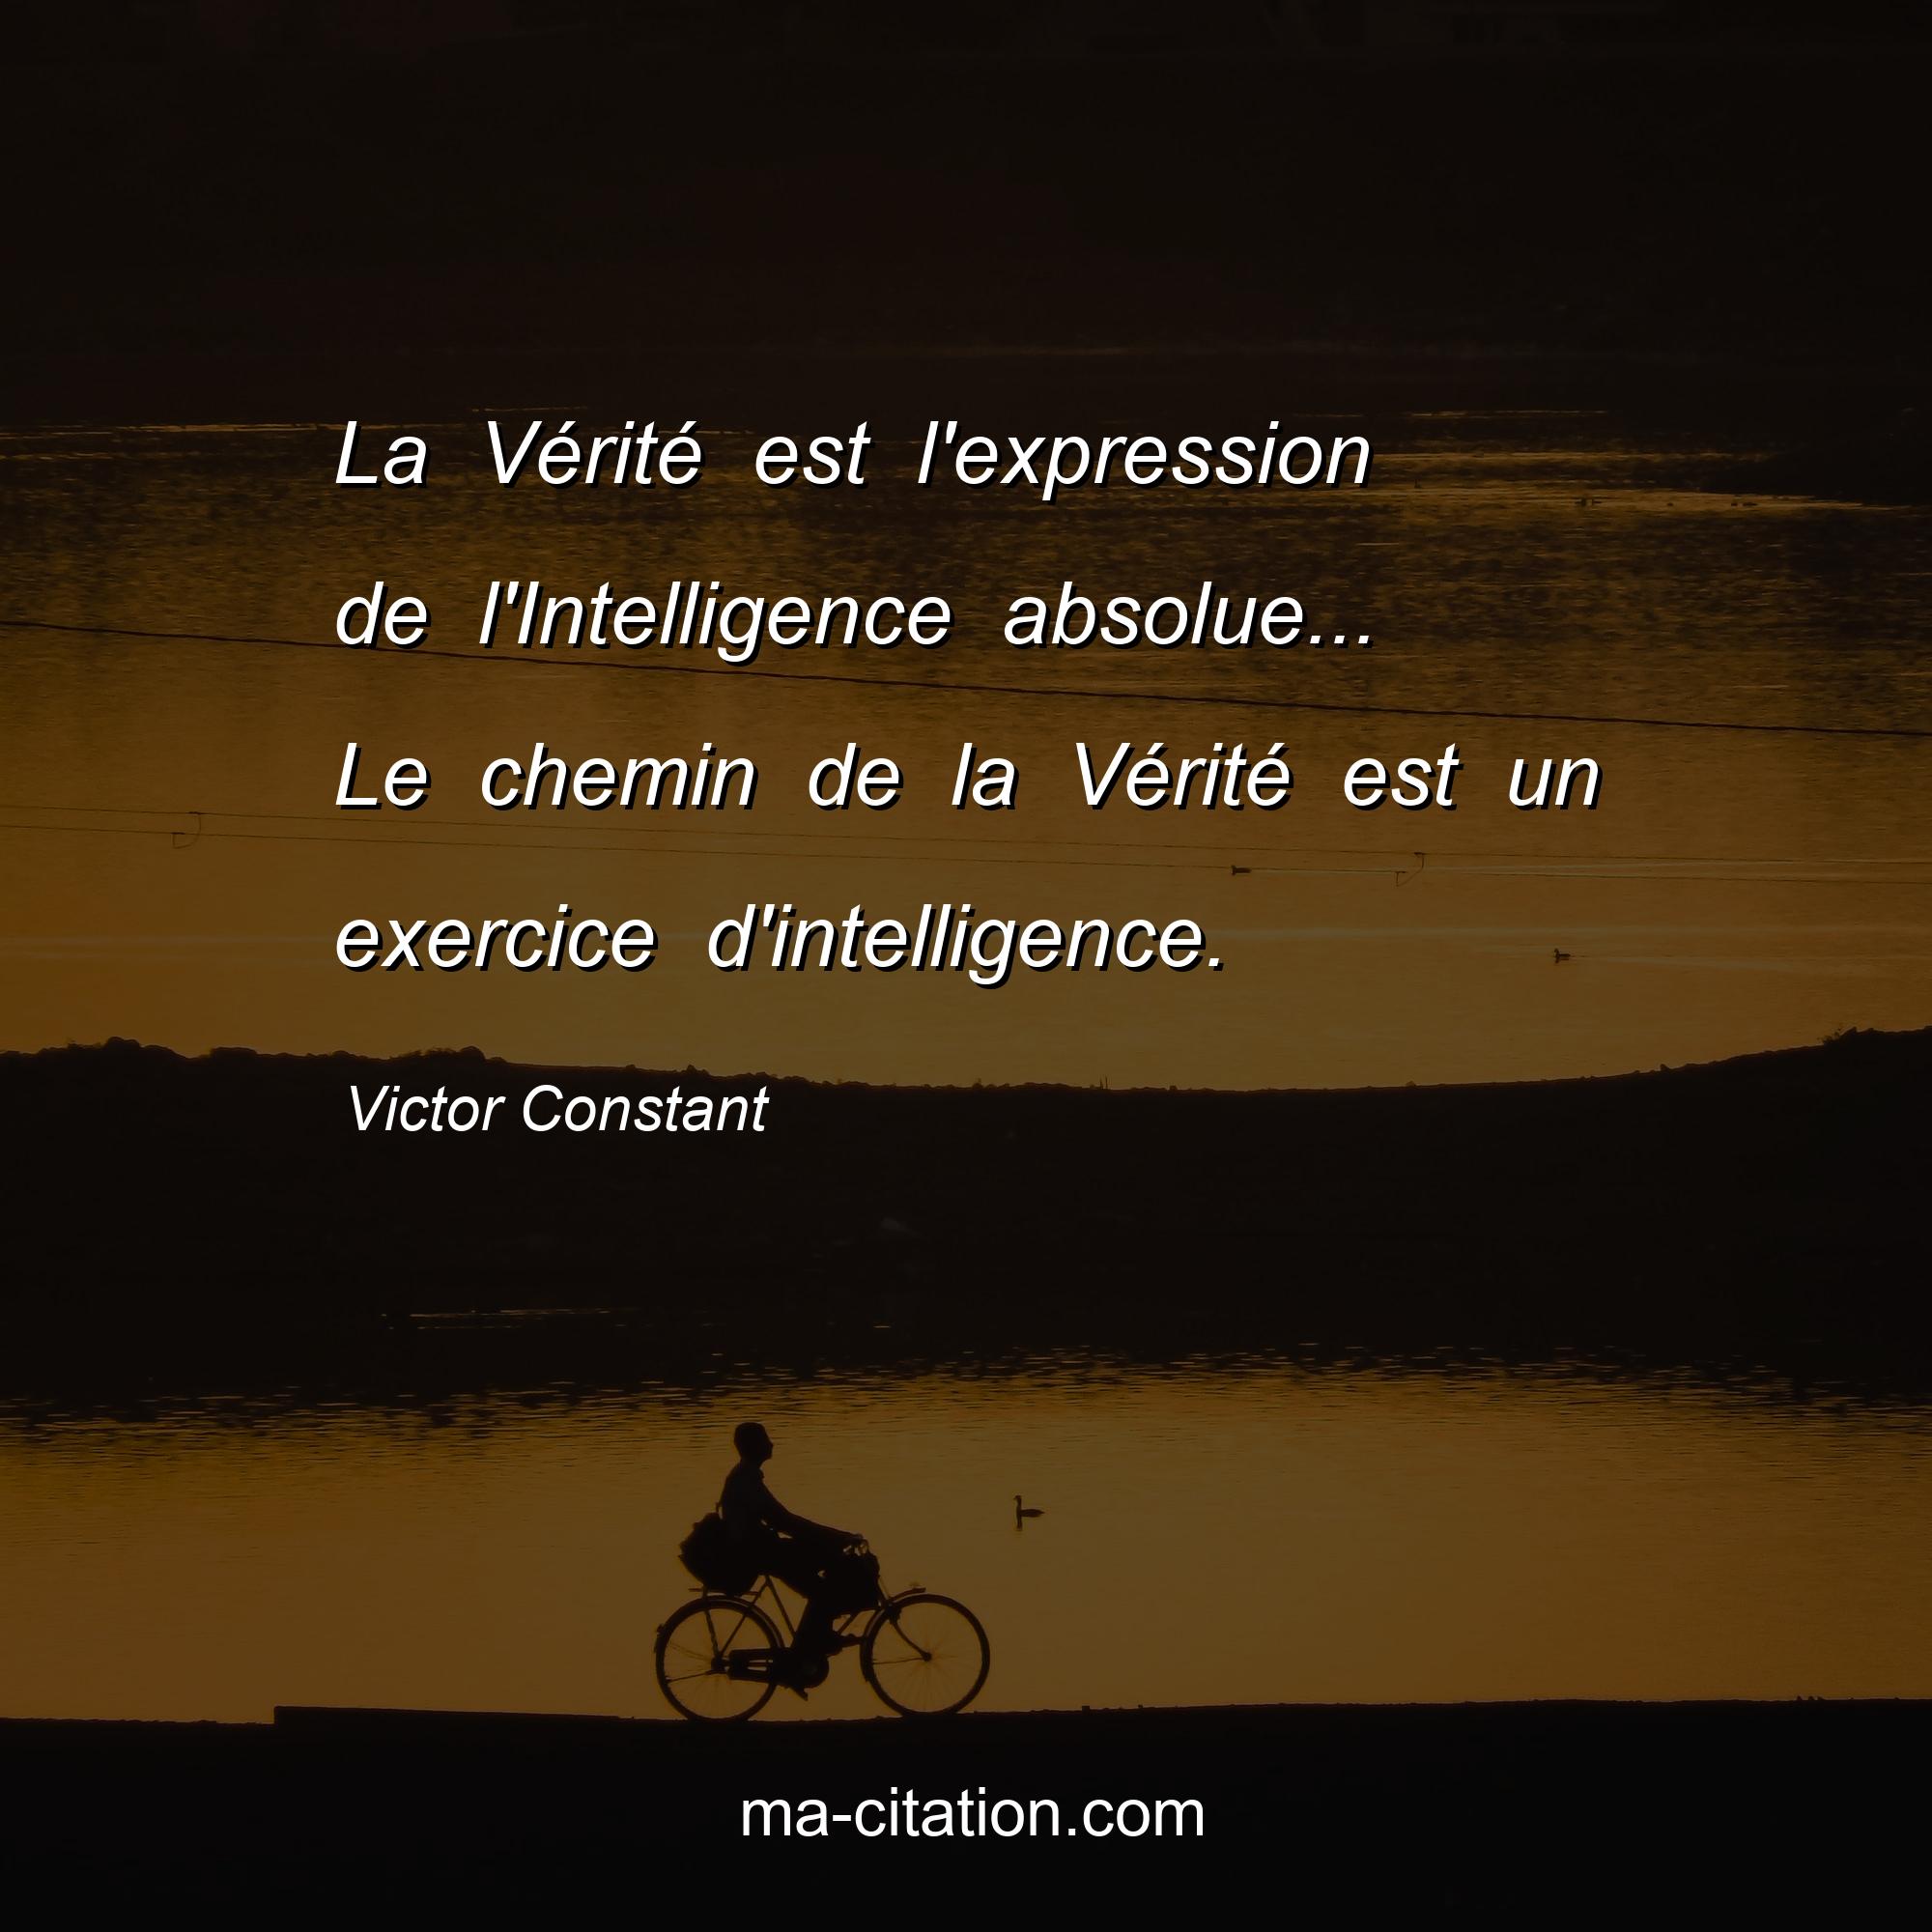 Victor Constant : La Vérité est l'expression de l'Intelligence absolue... Le chemin de la Vérité est un exercice d'intelligence.